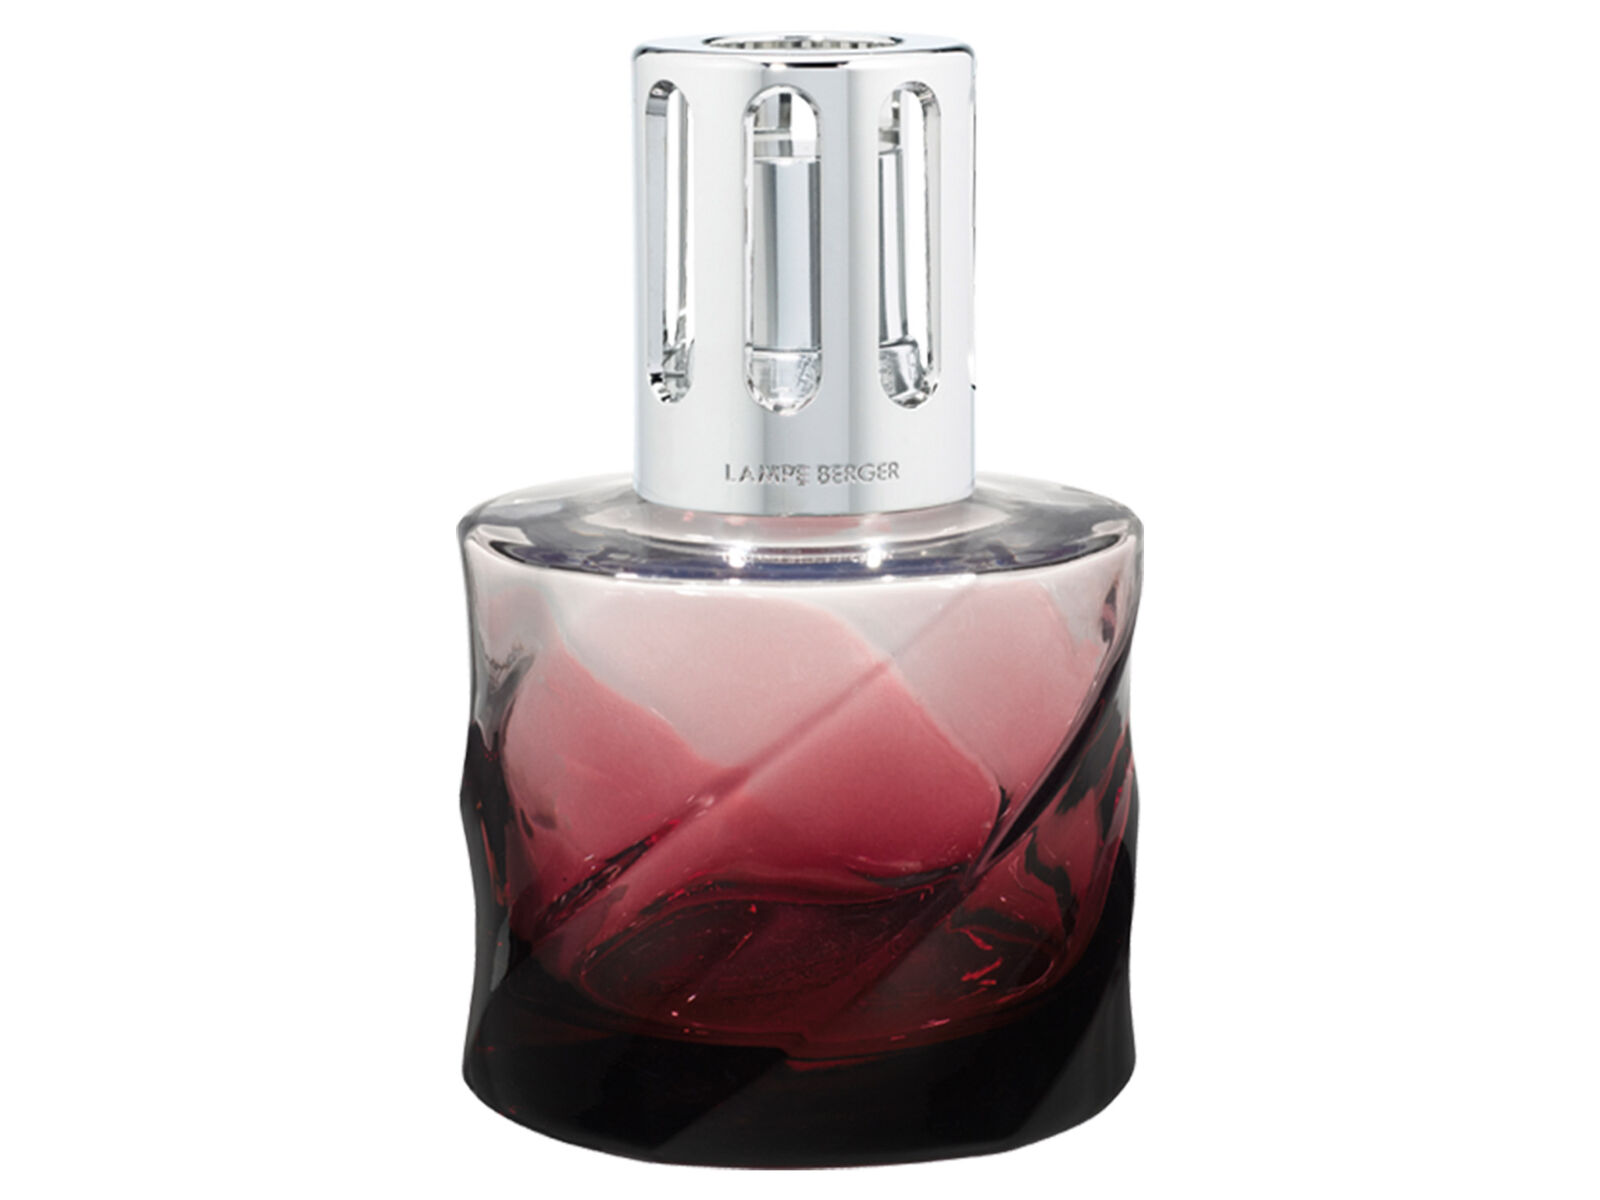 Maison Berger Paris Geschenkset 4805 | Spirale grenat + 250 ml Parfum